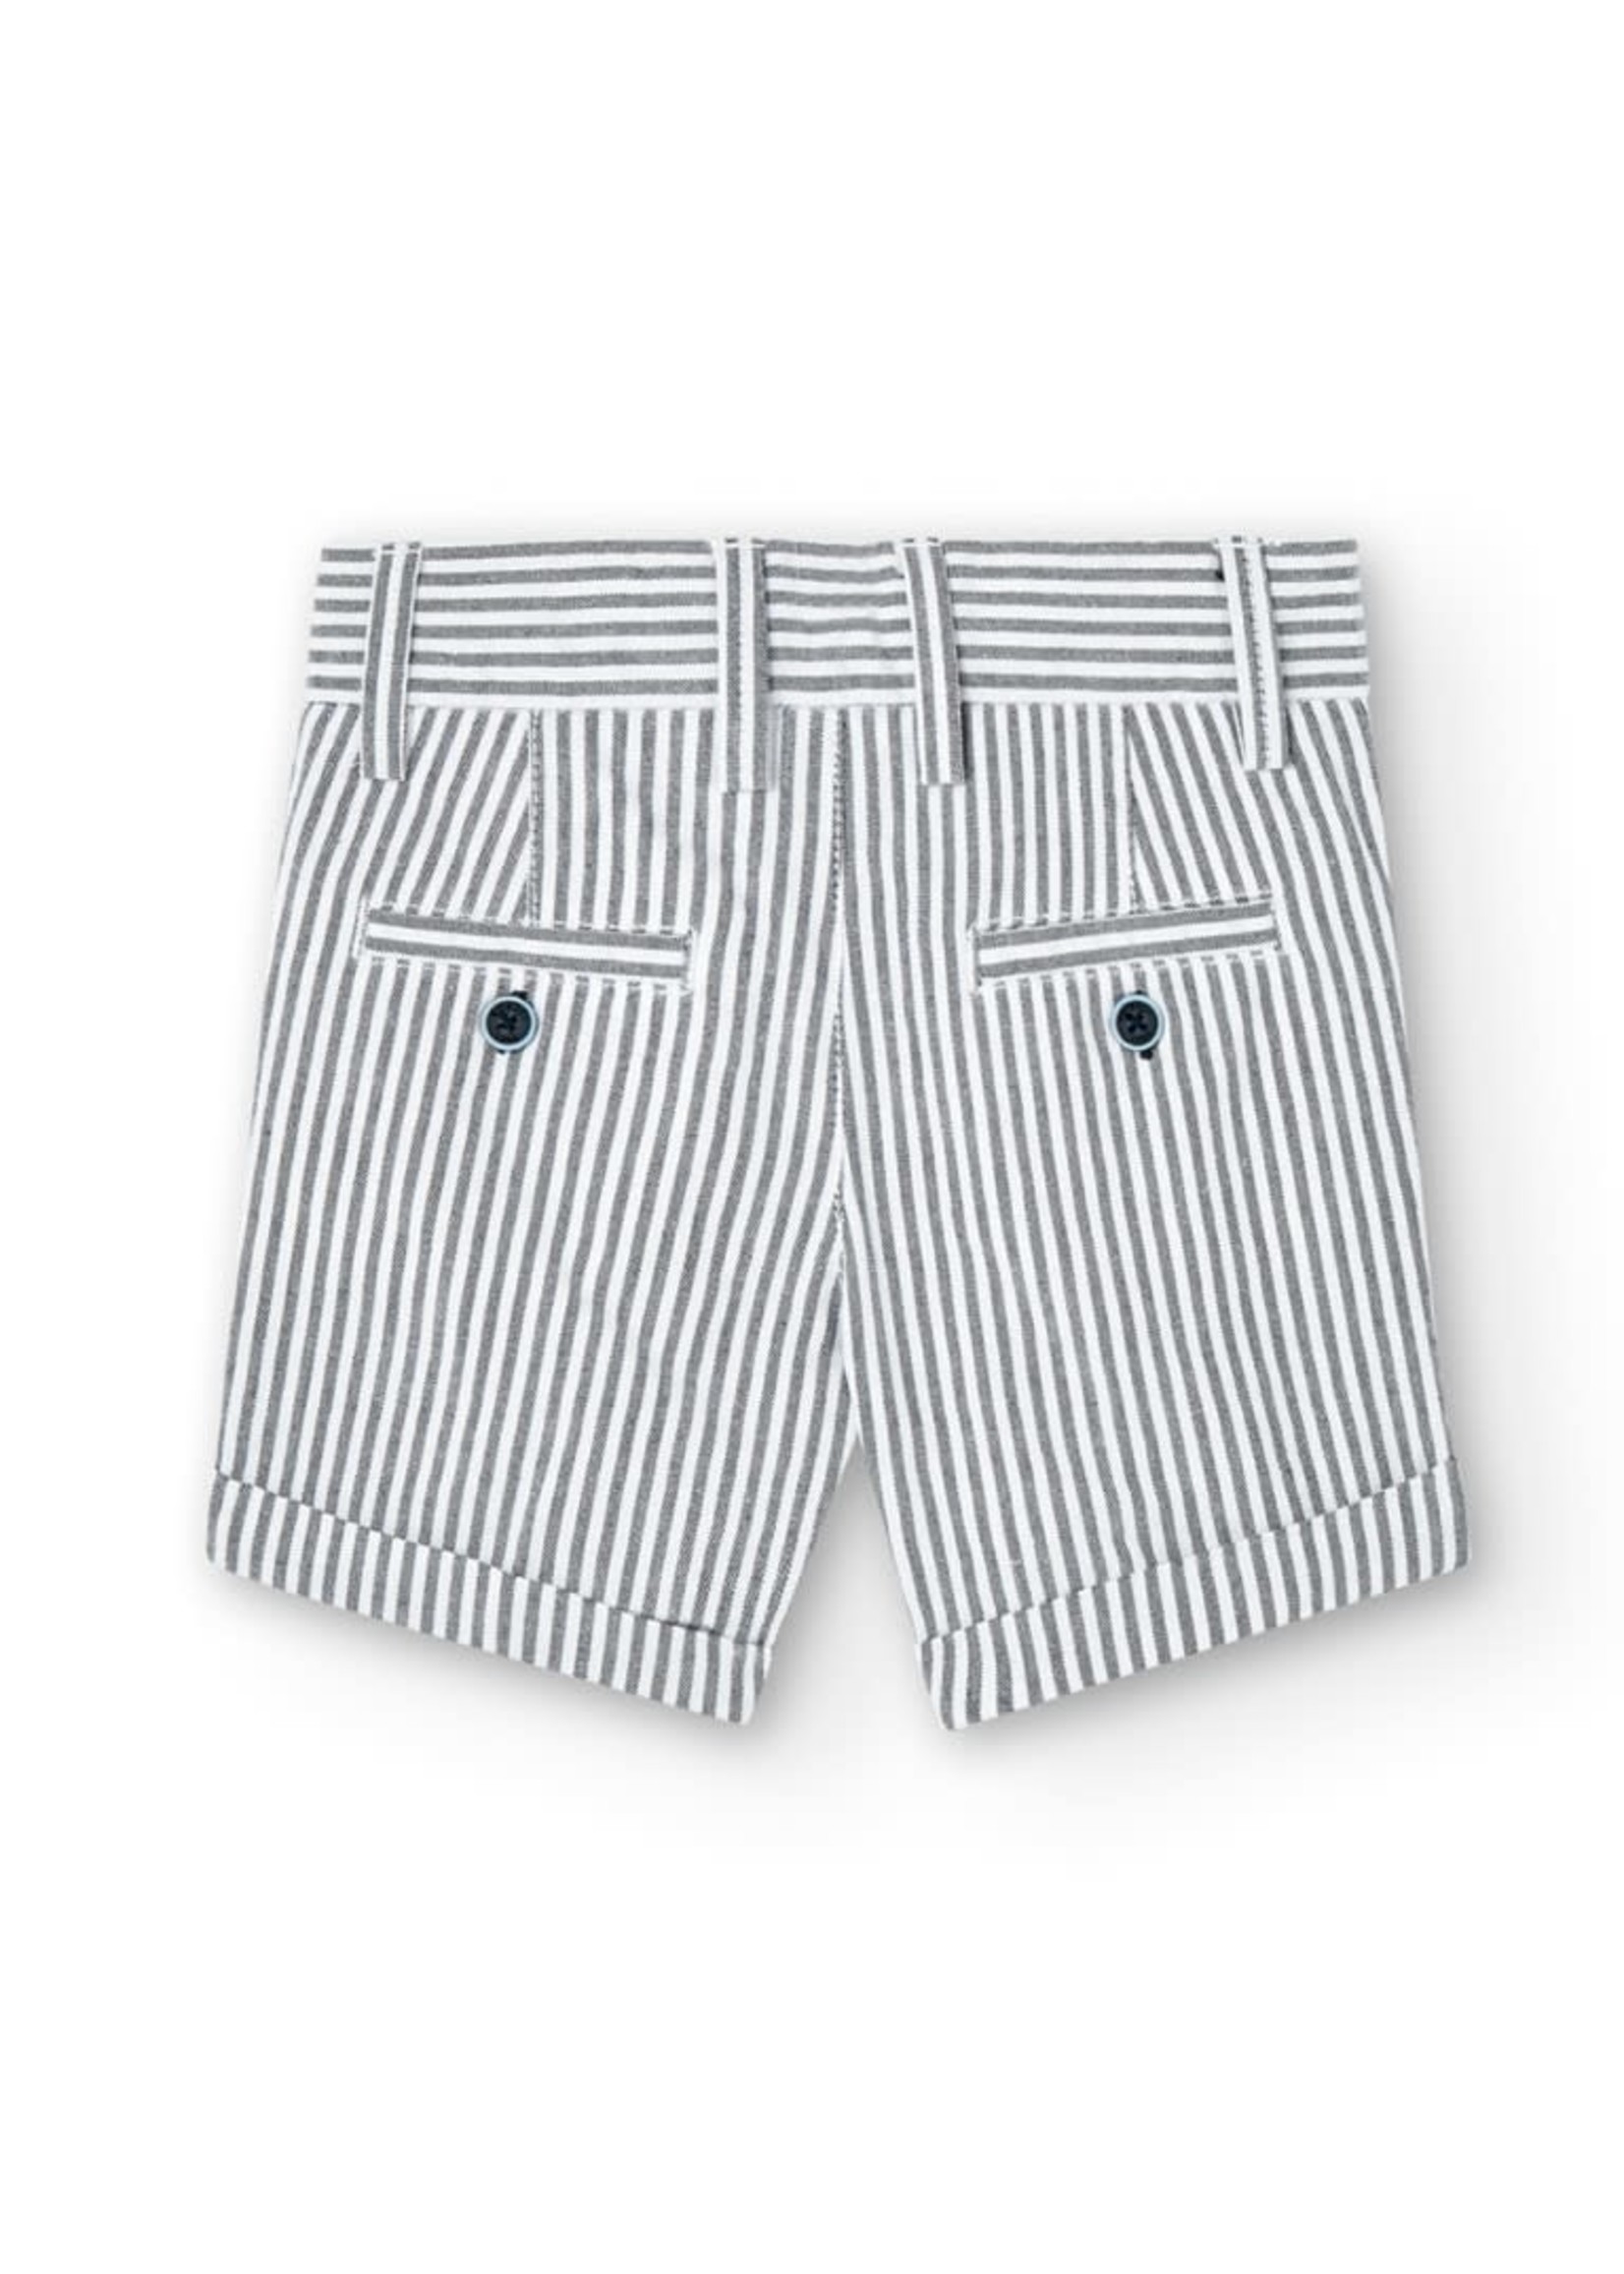 Boboli Boboli Oxford bermuda shorts striped for baby boy stripes 716273